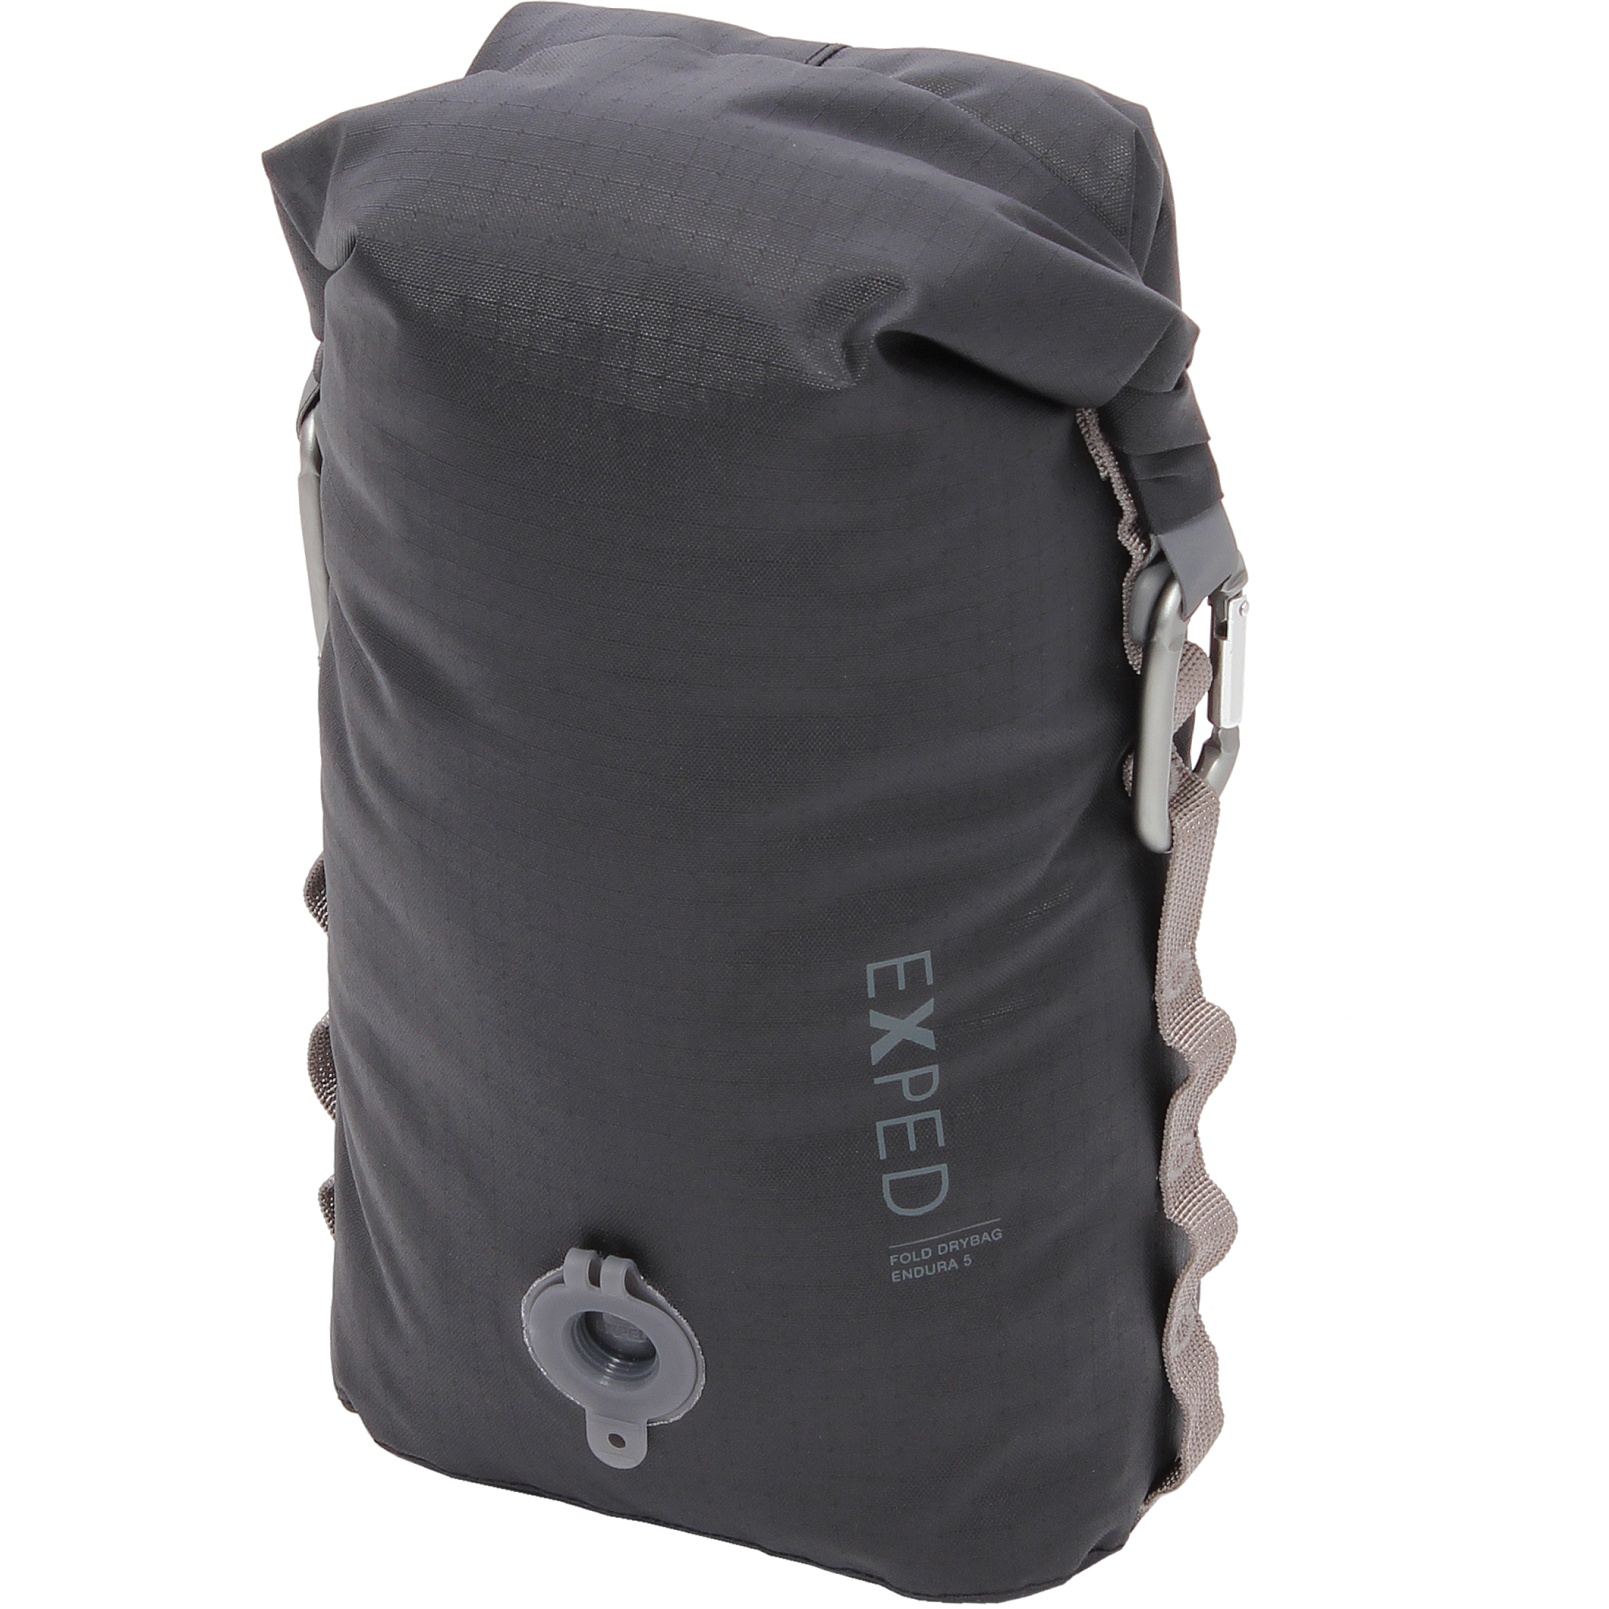 Produktbild von Exped Fold Drybag Endura Packsack - 5L - schwarz